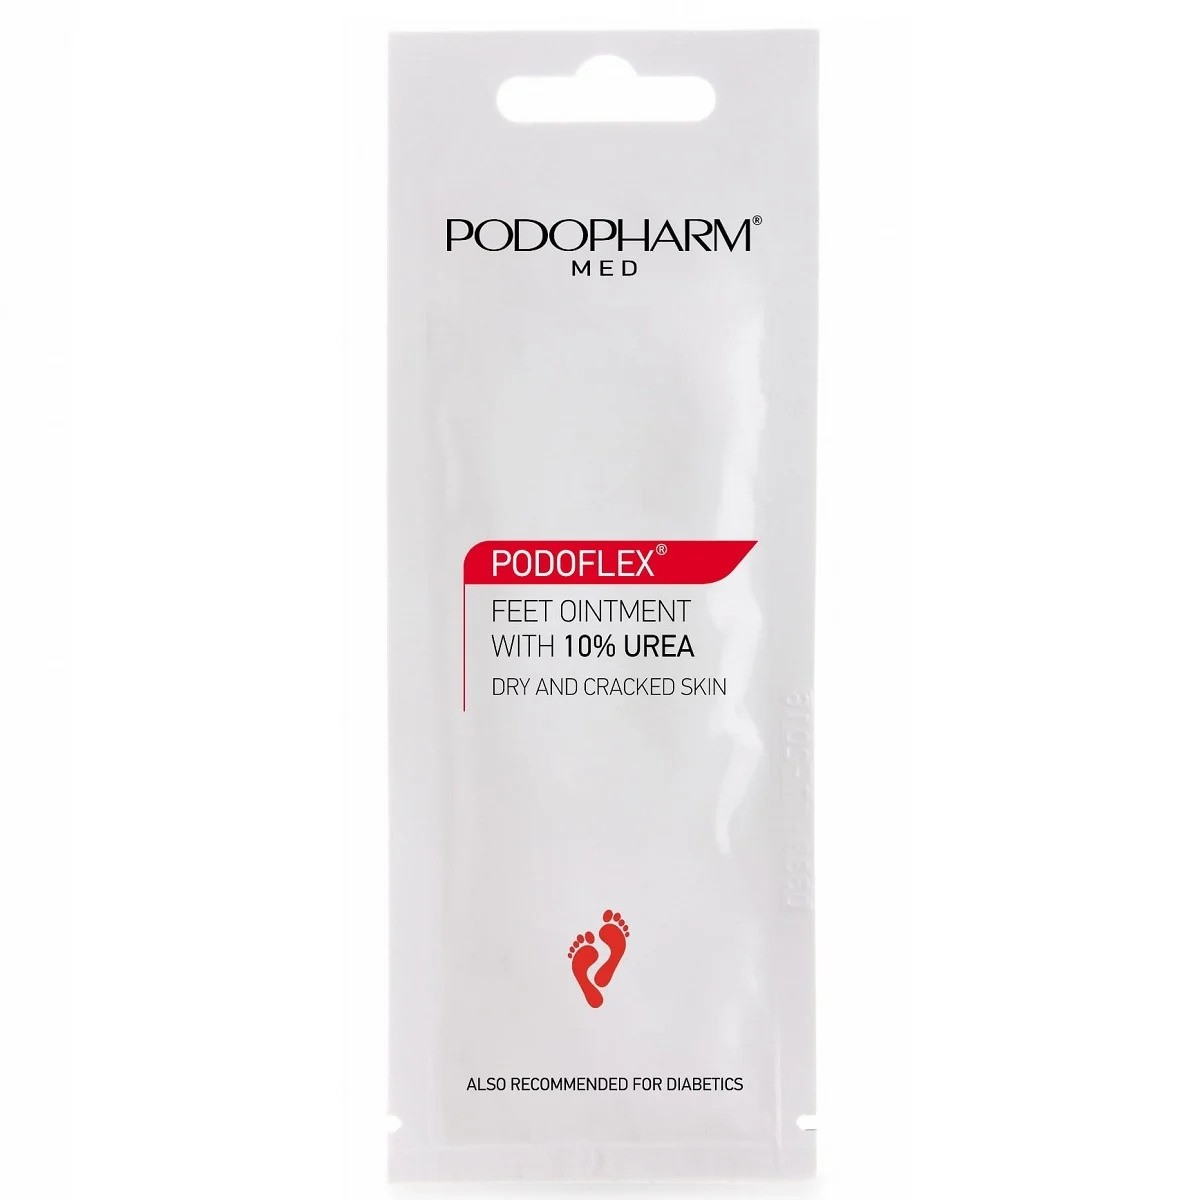 Podopharm Med Podoflex Feet Ointment 10% Urea  Dry & Cracked Skin 